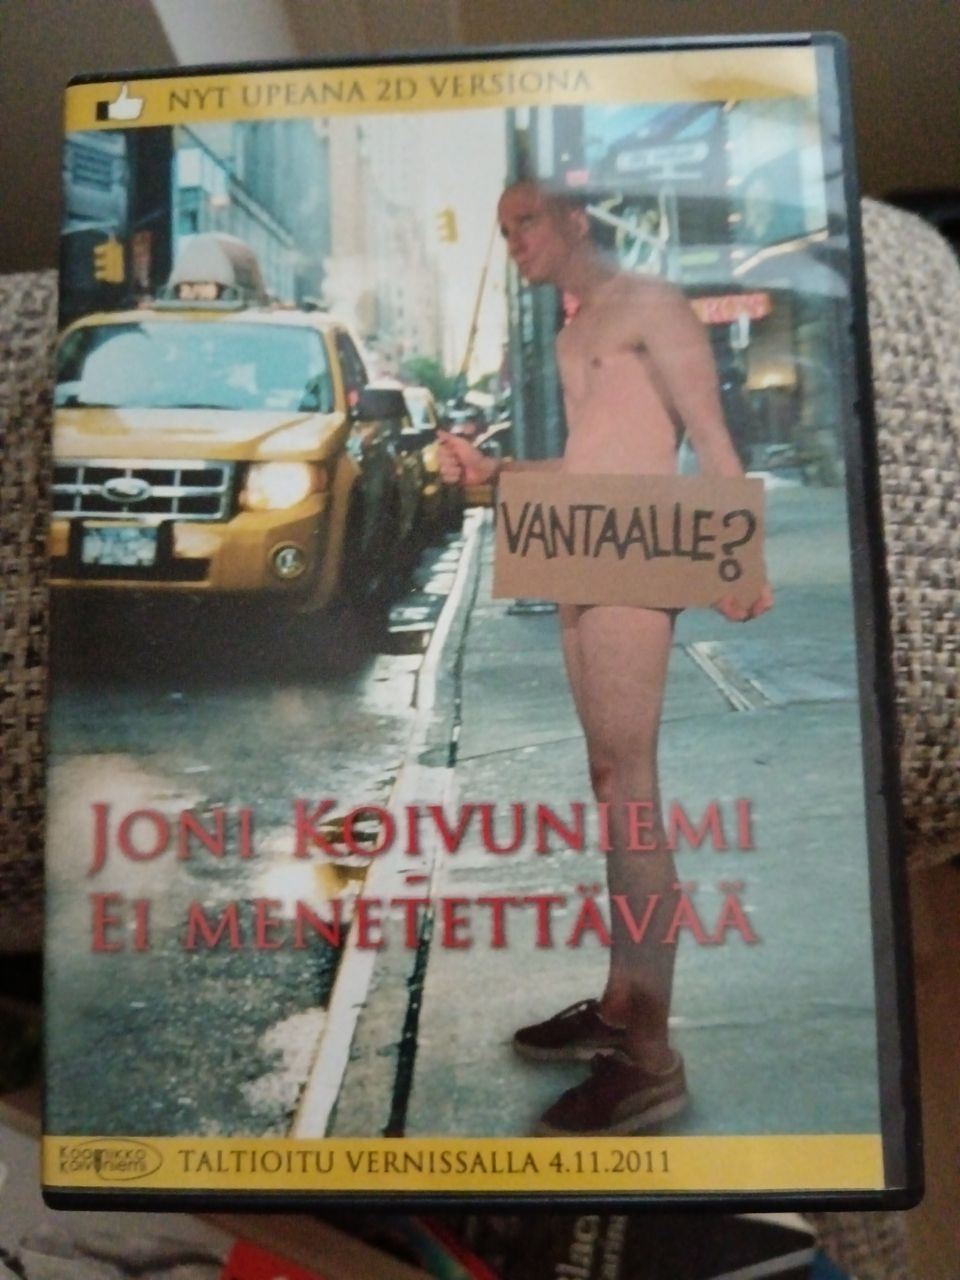 Joni Koivuniemi - Ei mitään menetettävää DVD